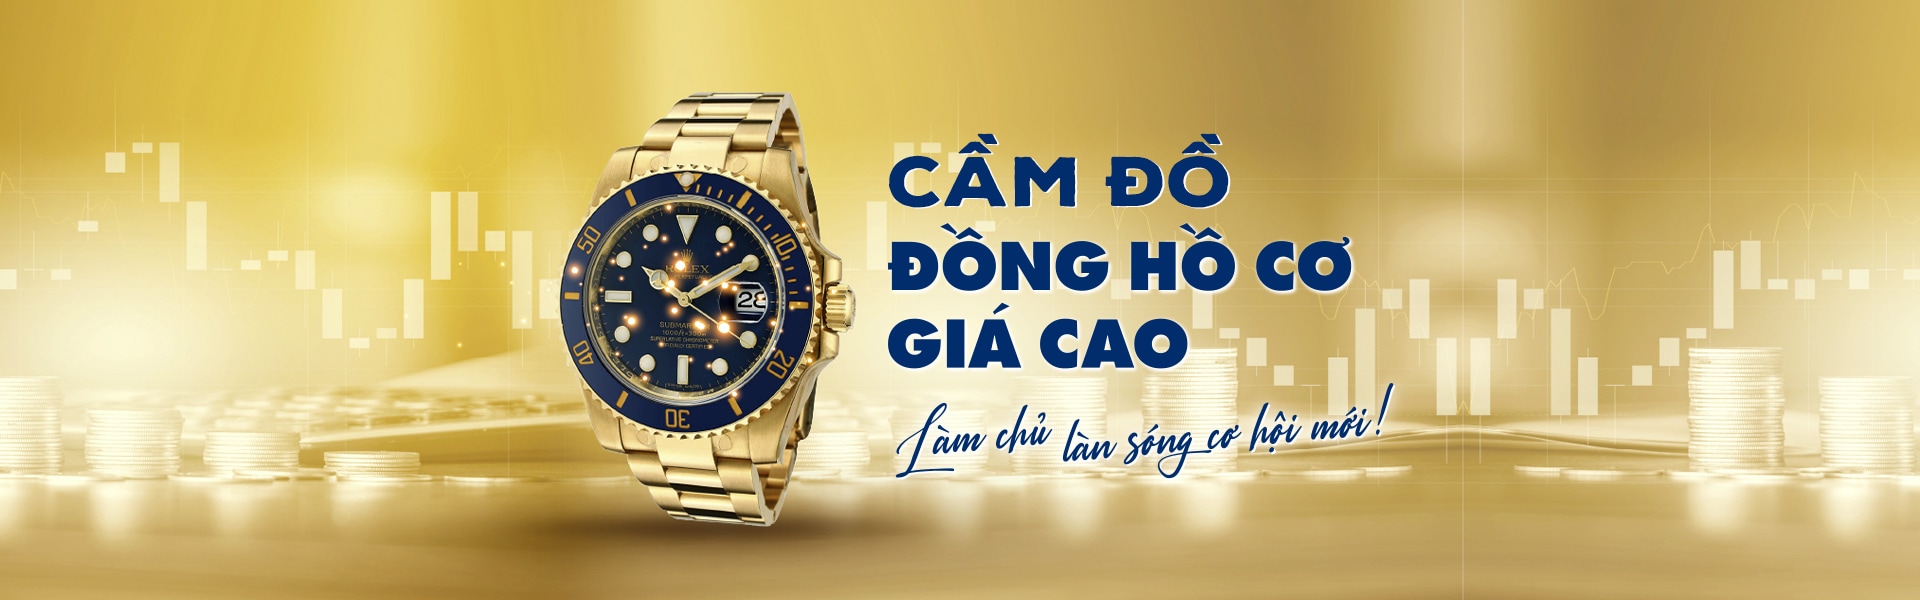 Cầm đồ đồng hồ tại Hà Nội | Uy tín, lãi suất thấp từ 2000đ